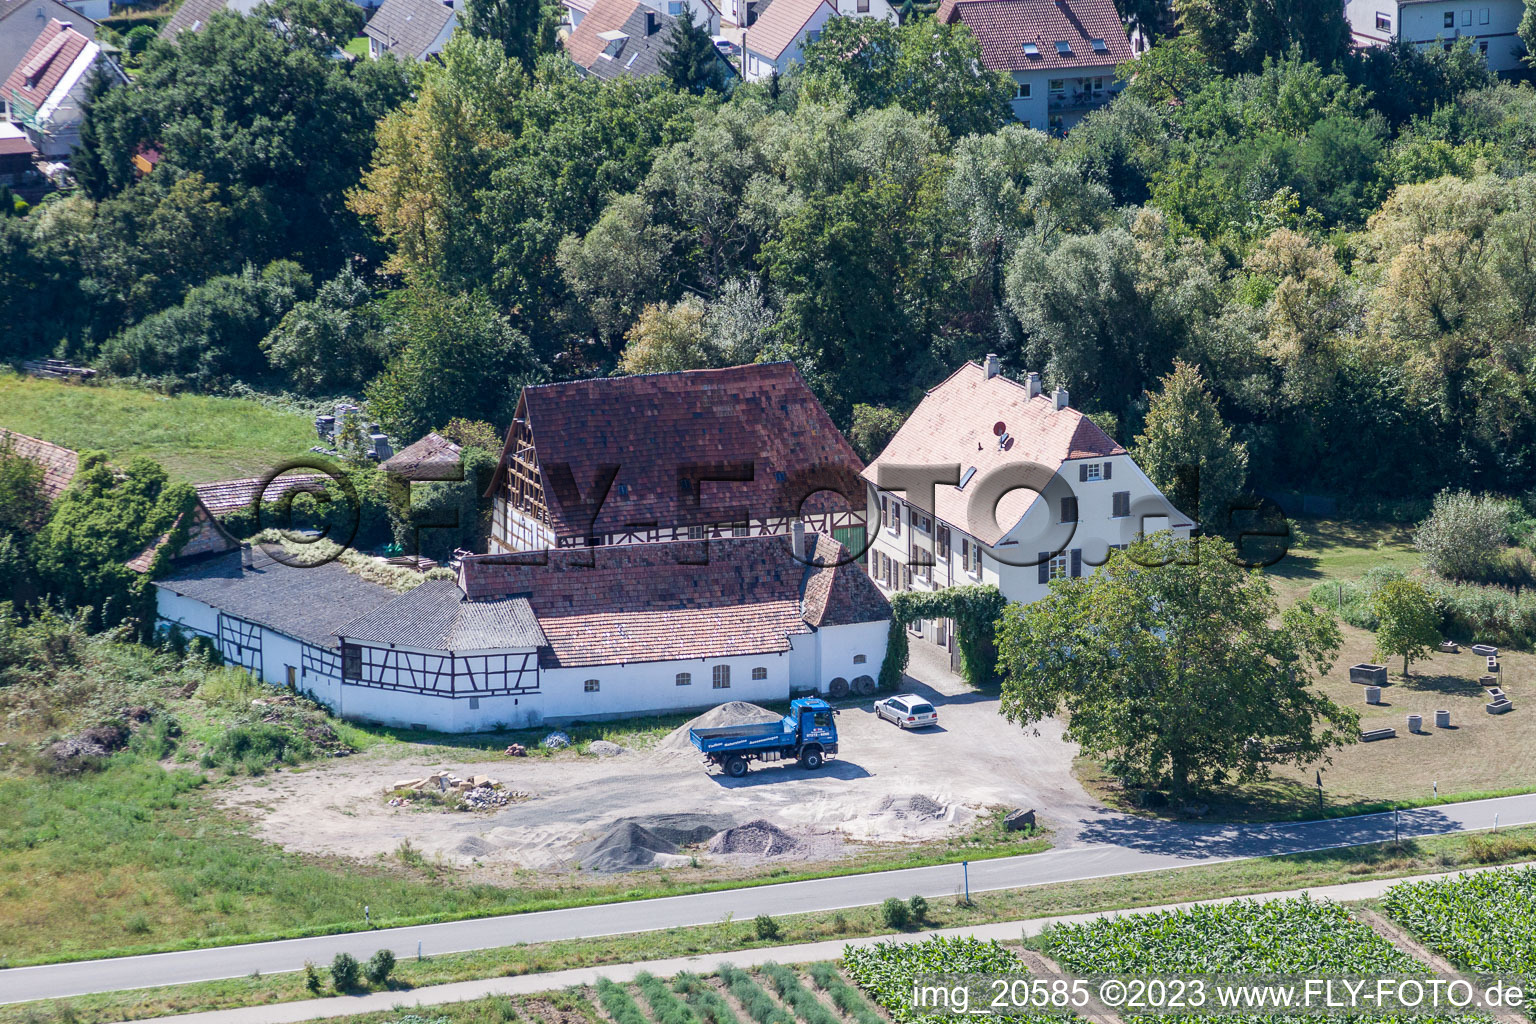 Rheinzabern im Bundesland Rheinland-Pfalz, Deutschland von einer Drohne aus